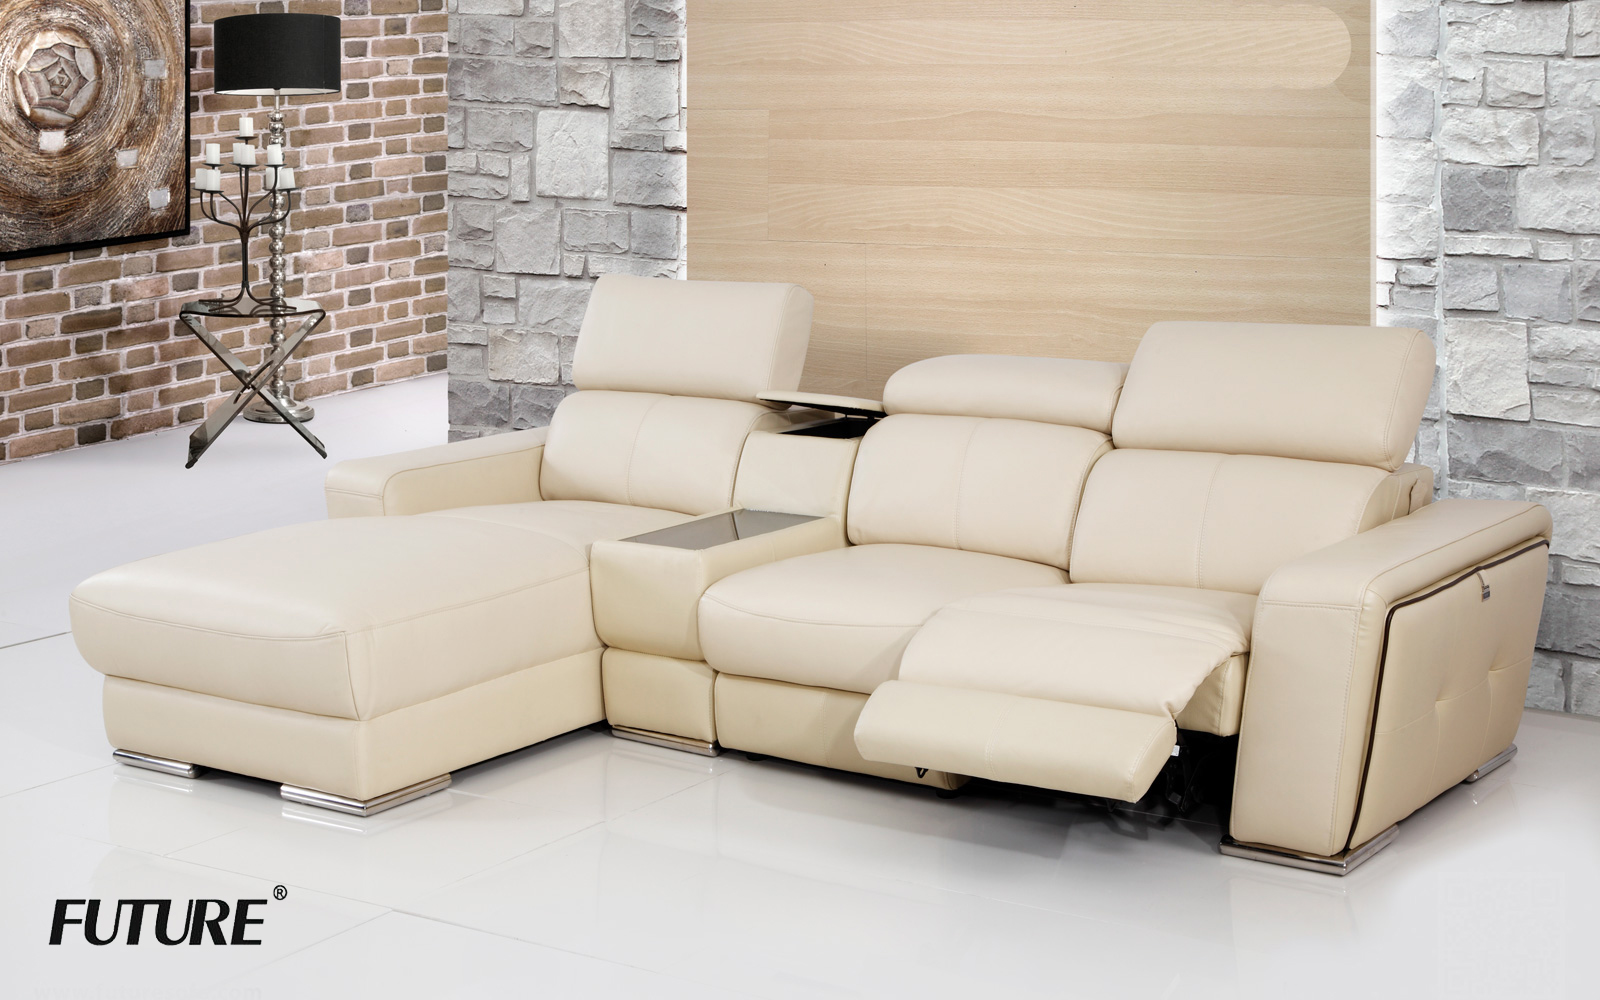 Địa chỉ showroom LUXURYSOFA chuyên sofa nhập khẩu tiêu chuẩn châu Âu - Ảnh 4